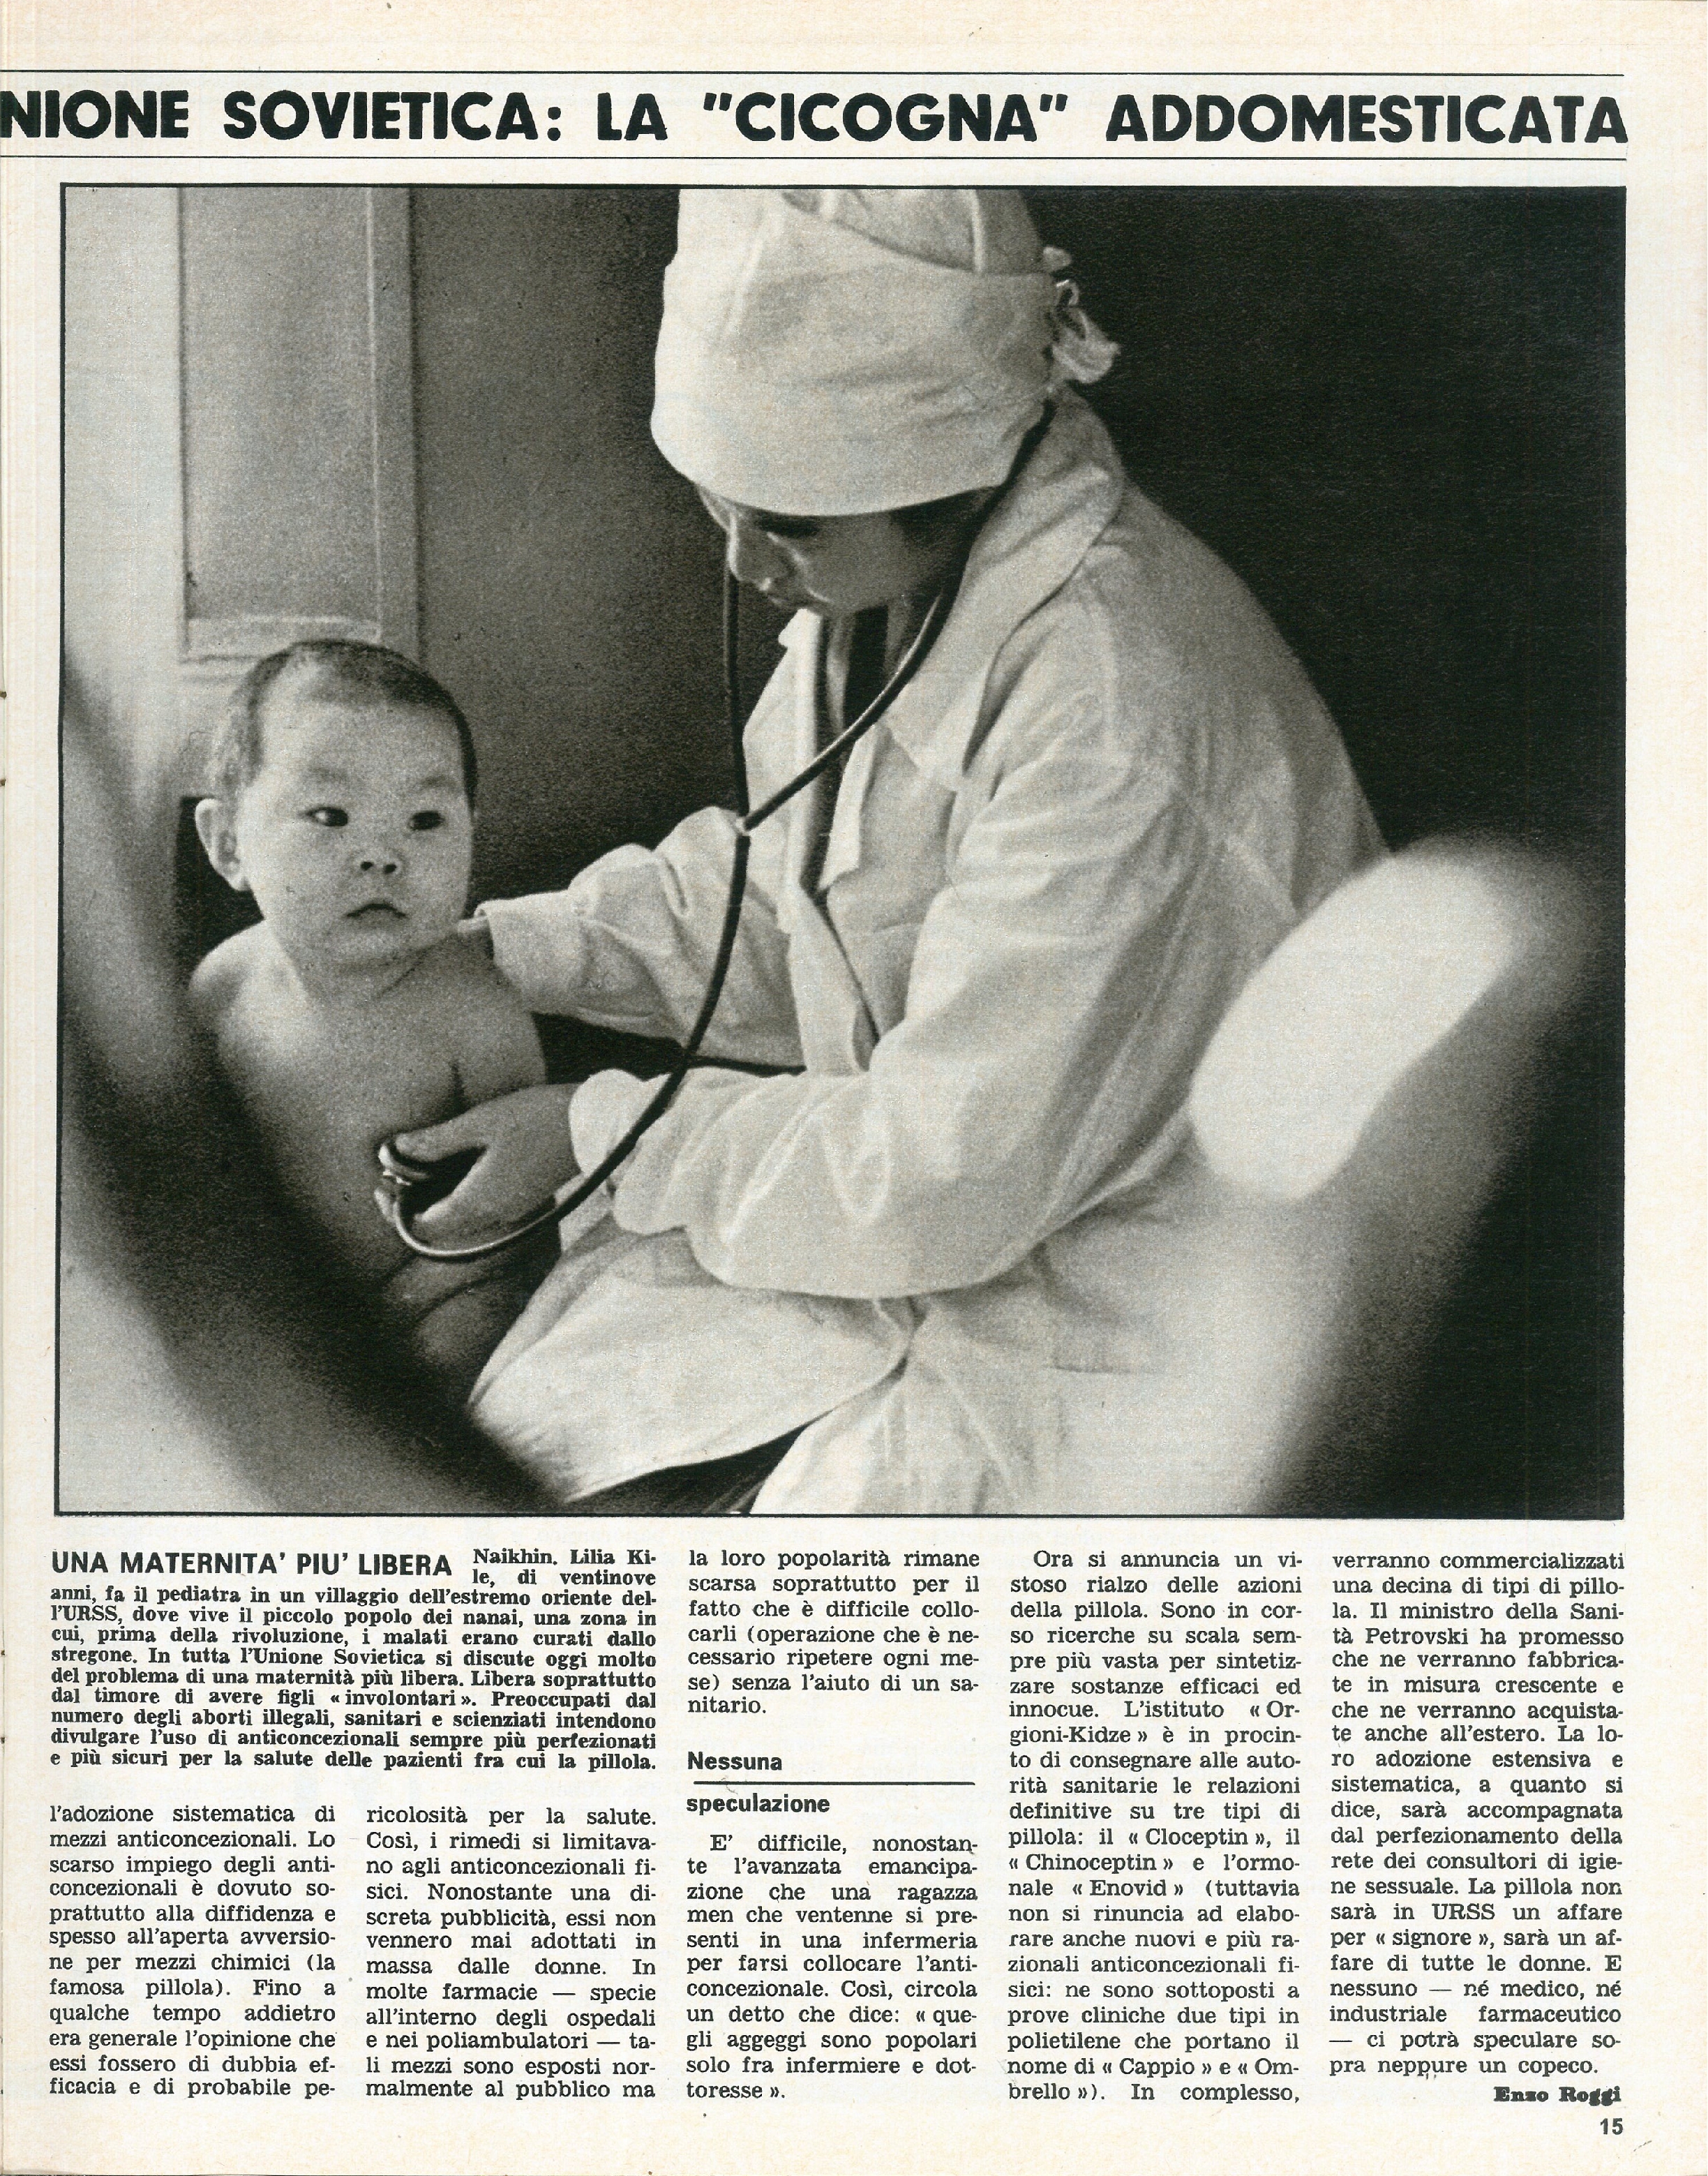 Foto: Unione Sovietica: controllo delle nascite. Le lotte dei tessili. La famiglia Cervi. Il vero dramma del Biafra